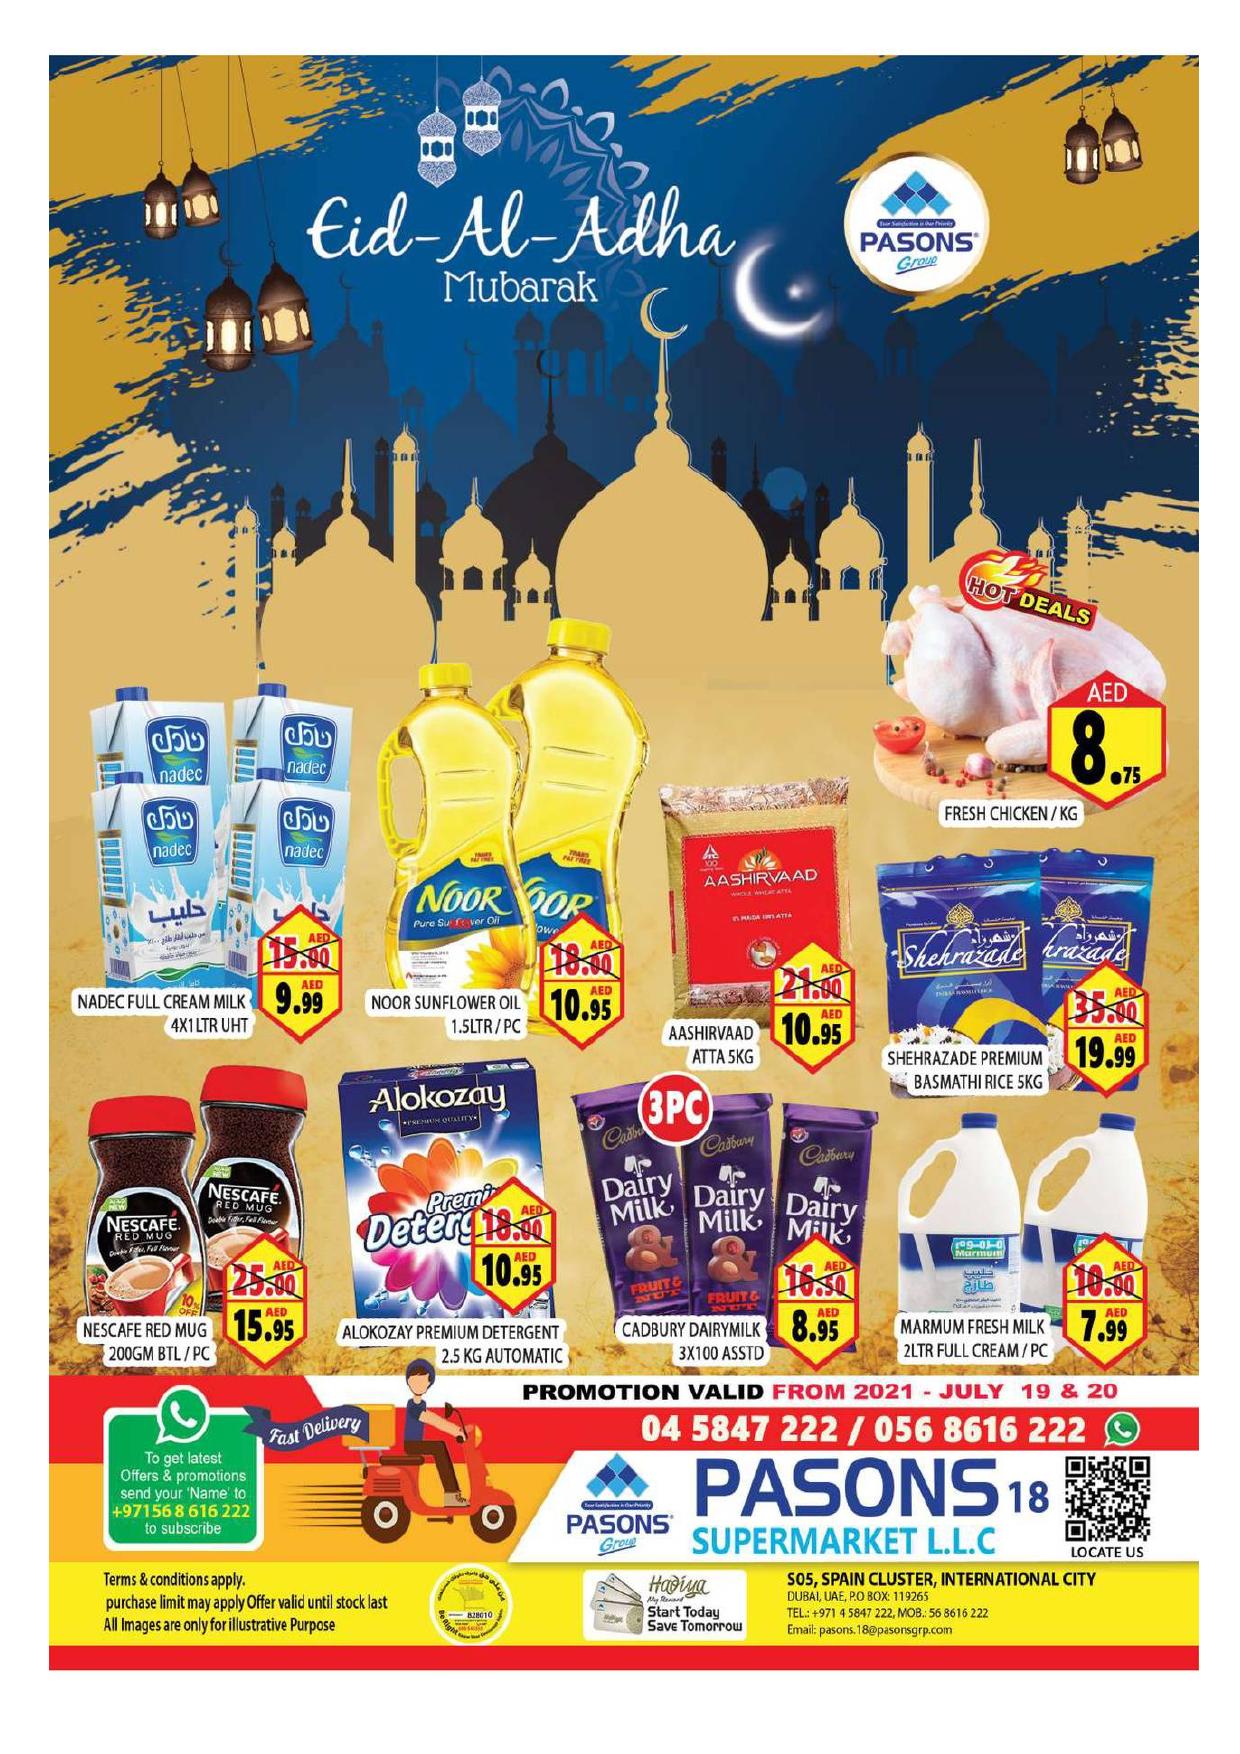 <p><span style="font-size: 18px;"><font color="#424242">Eid Al Adha Offers - Pasons 18 Supermarket</font></span><br></p>